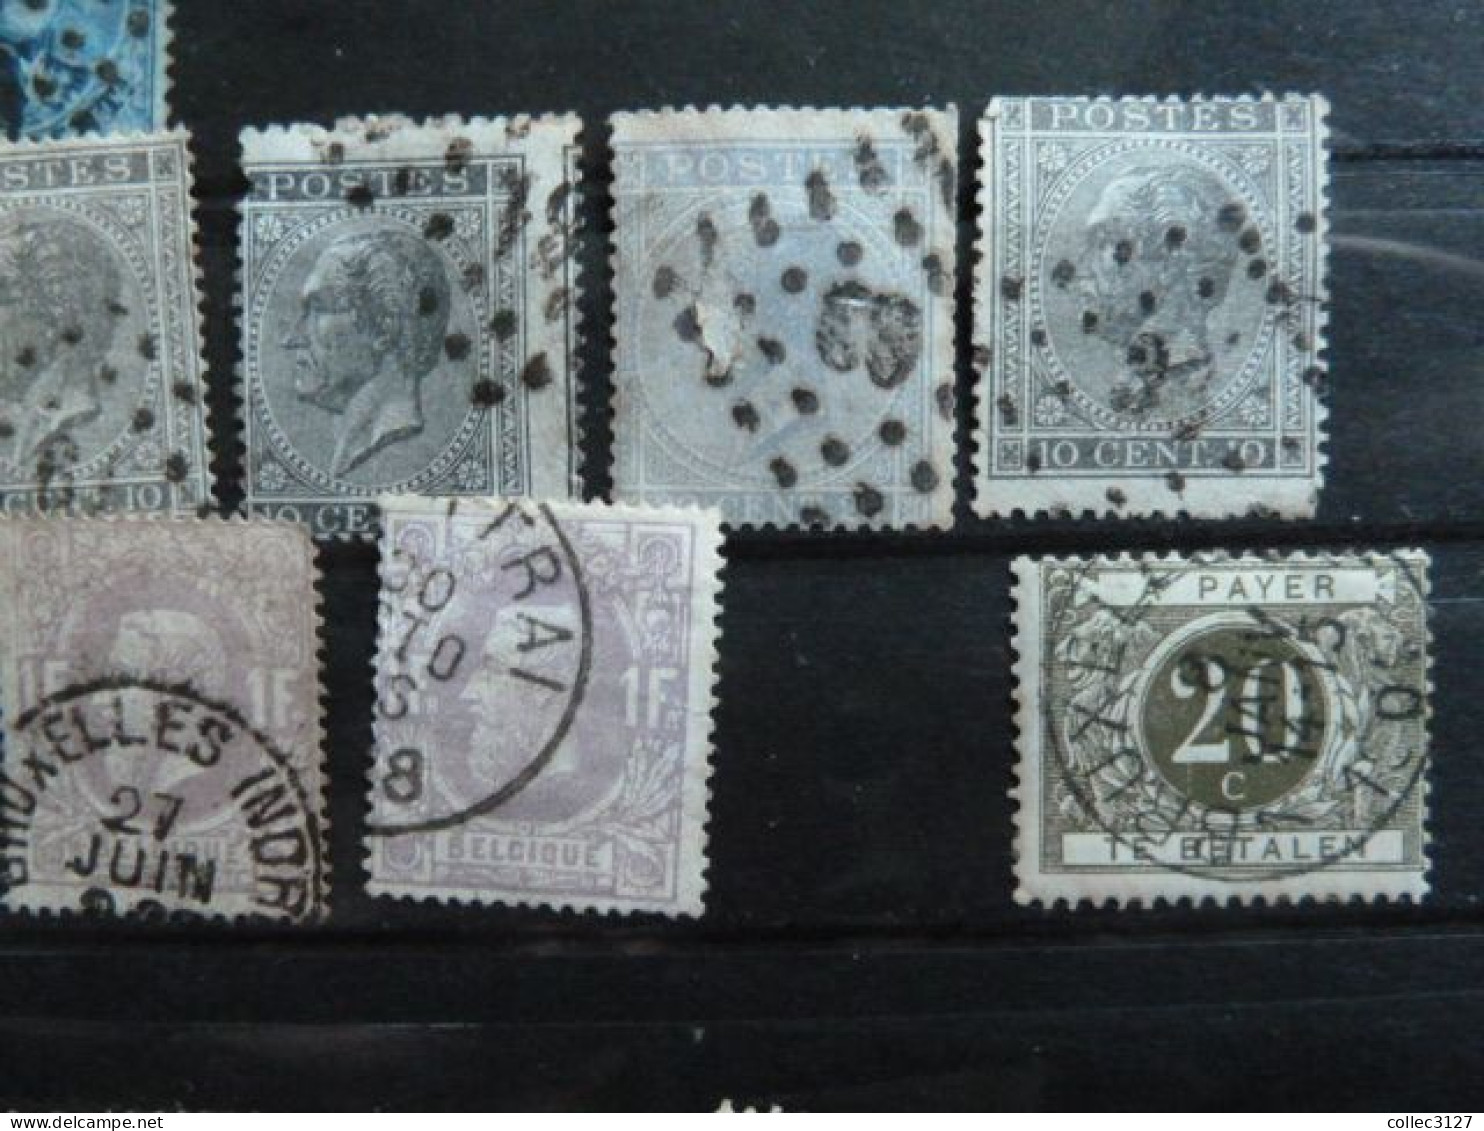 H2 - Belgique - Petit lot de timbres classiques - voirs photos détaillées